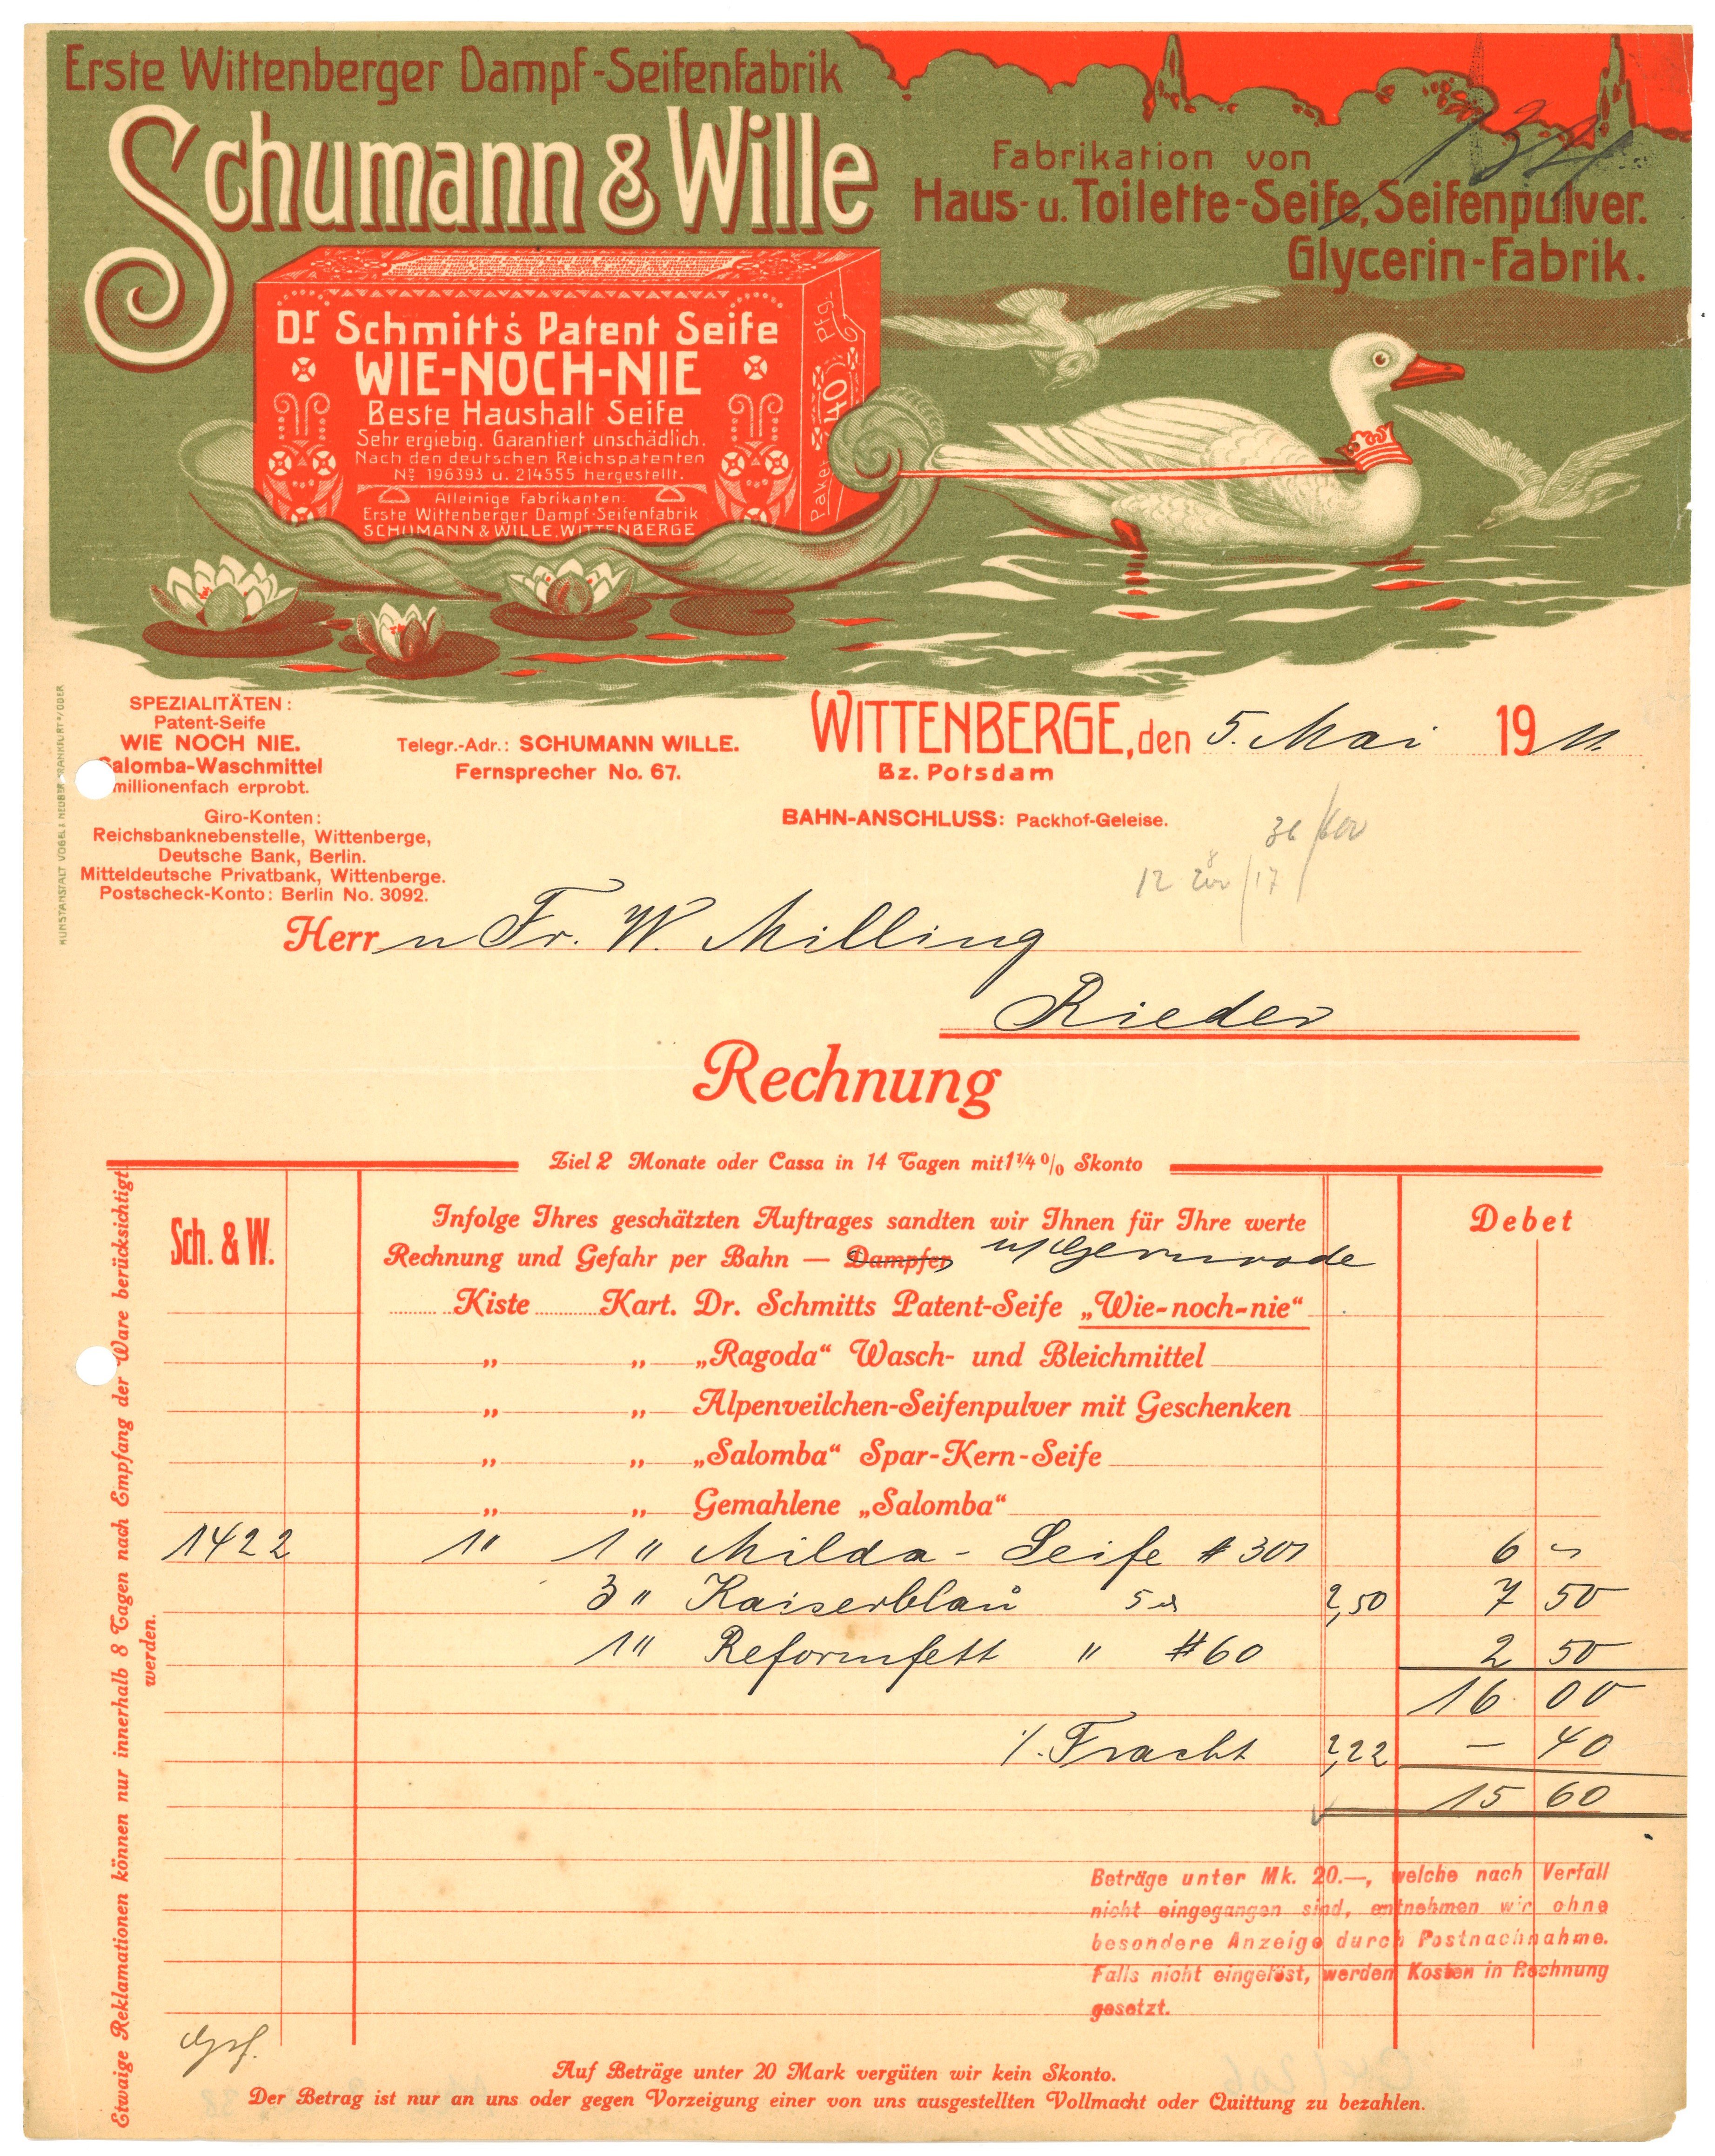 Rechnung der Seifenfabrik Schumann & Wille in Wittenberge 1911 (Landesgeschichtliche Vereinigung für die Mark Brandenburg e.V., Archiv CC BY)